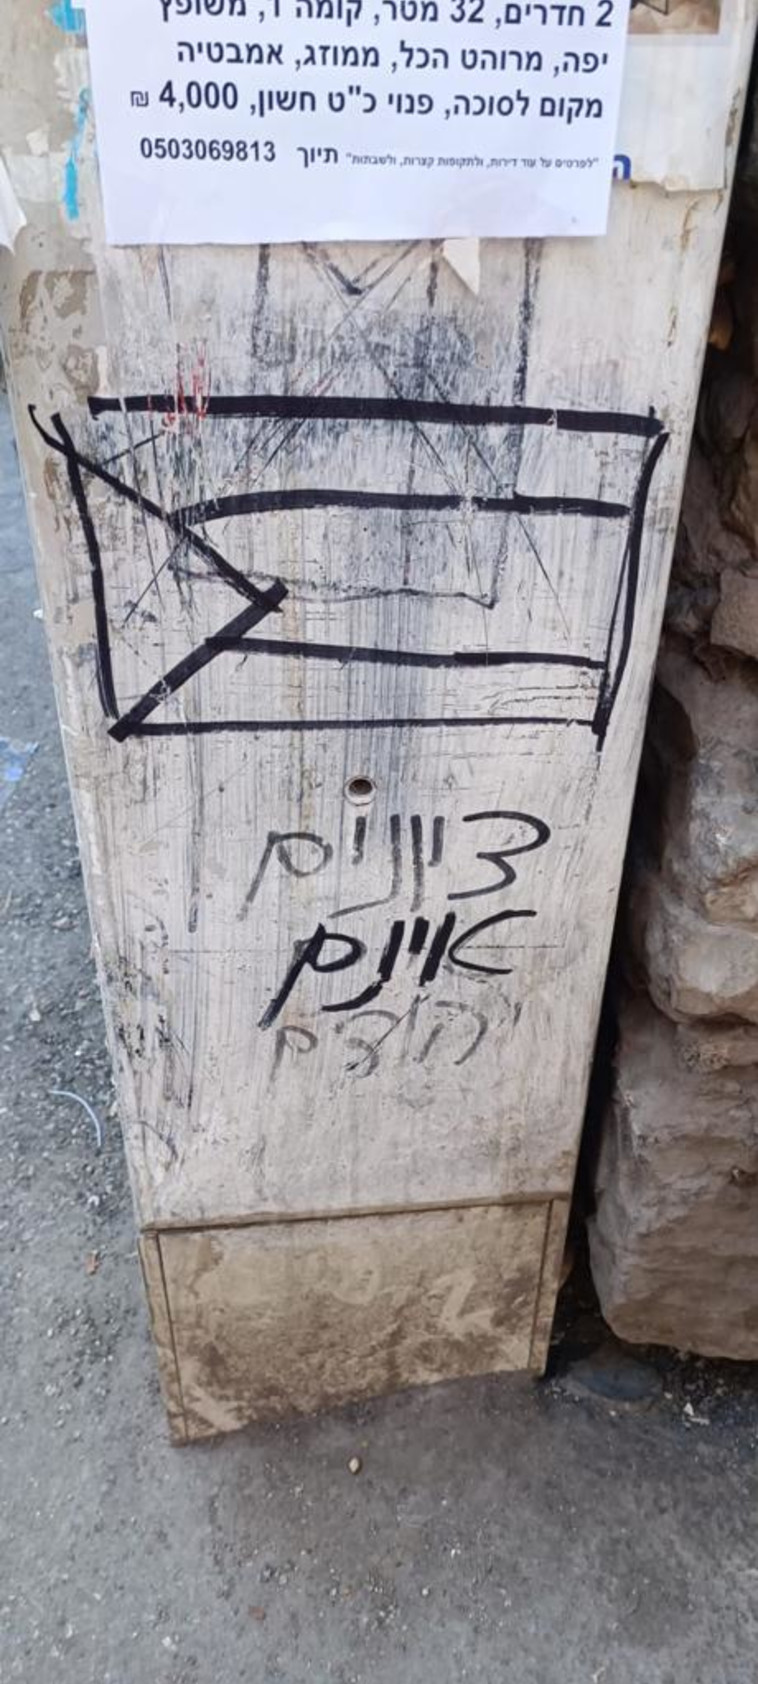 כתובת נאצה בשכונת מאה שערים  (צילום: דוברות המשטרה)